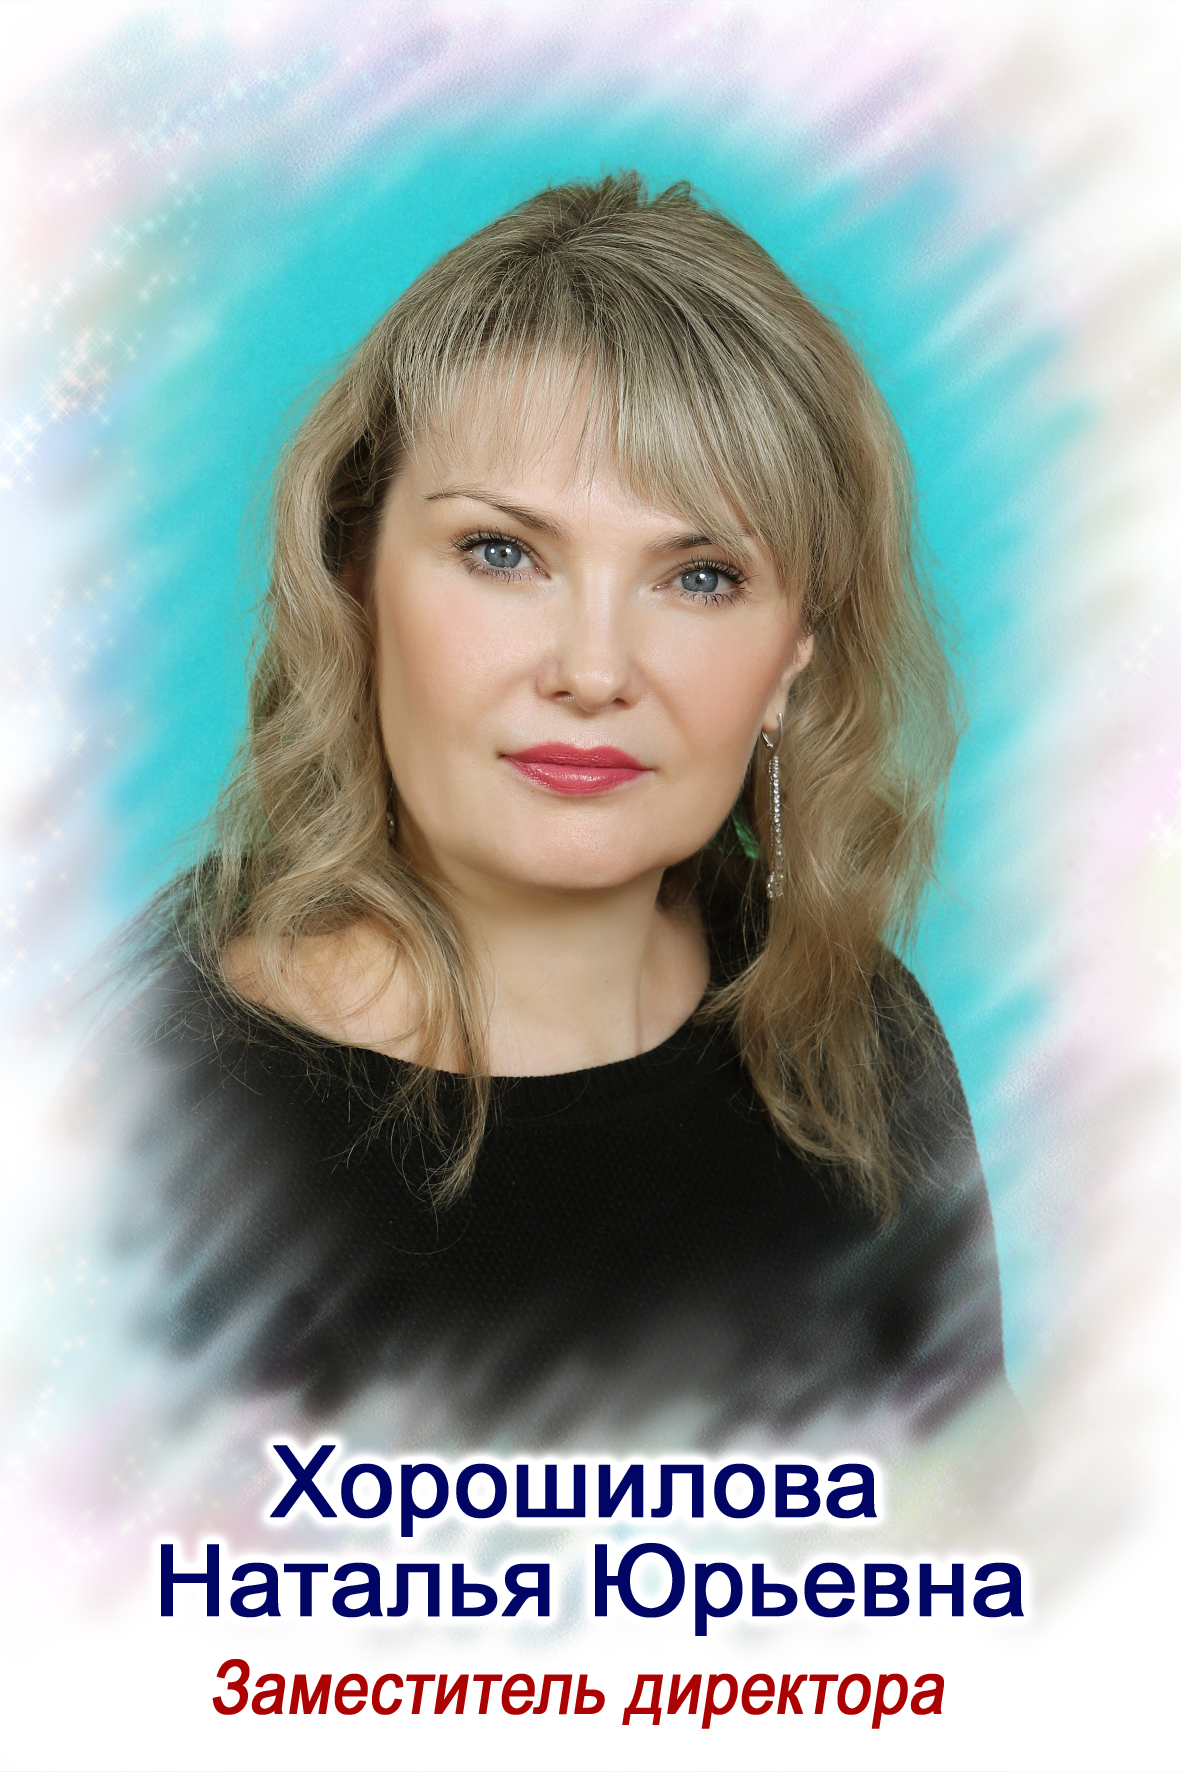 Хорошилова Наталья Юрьевна.